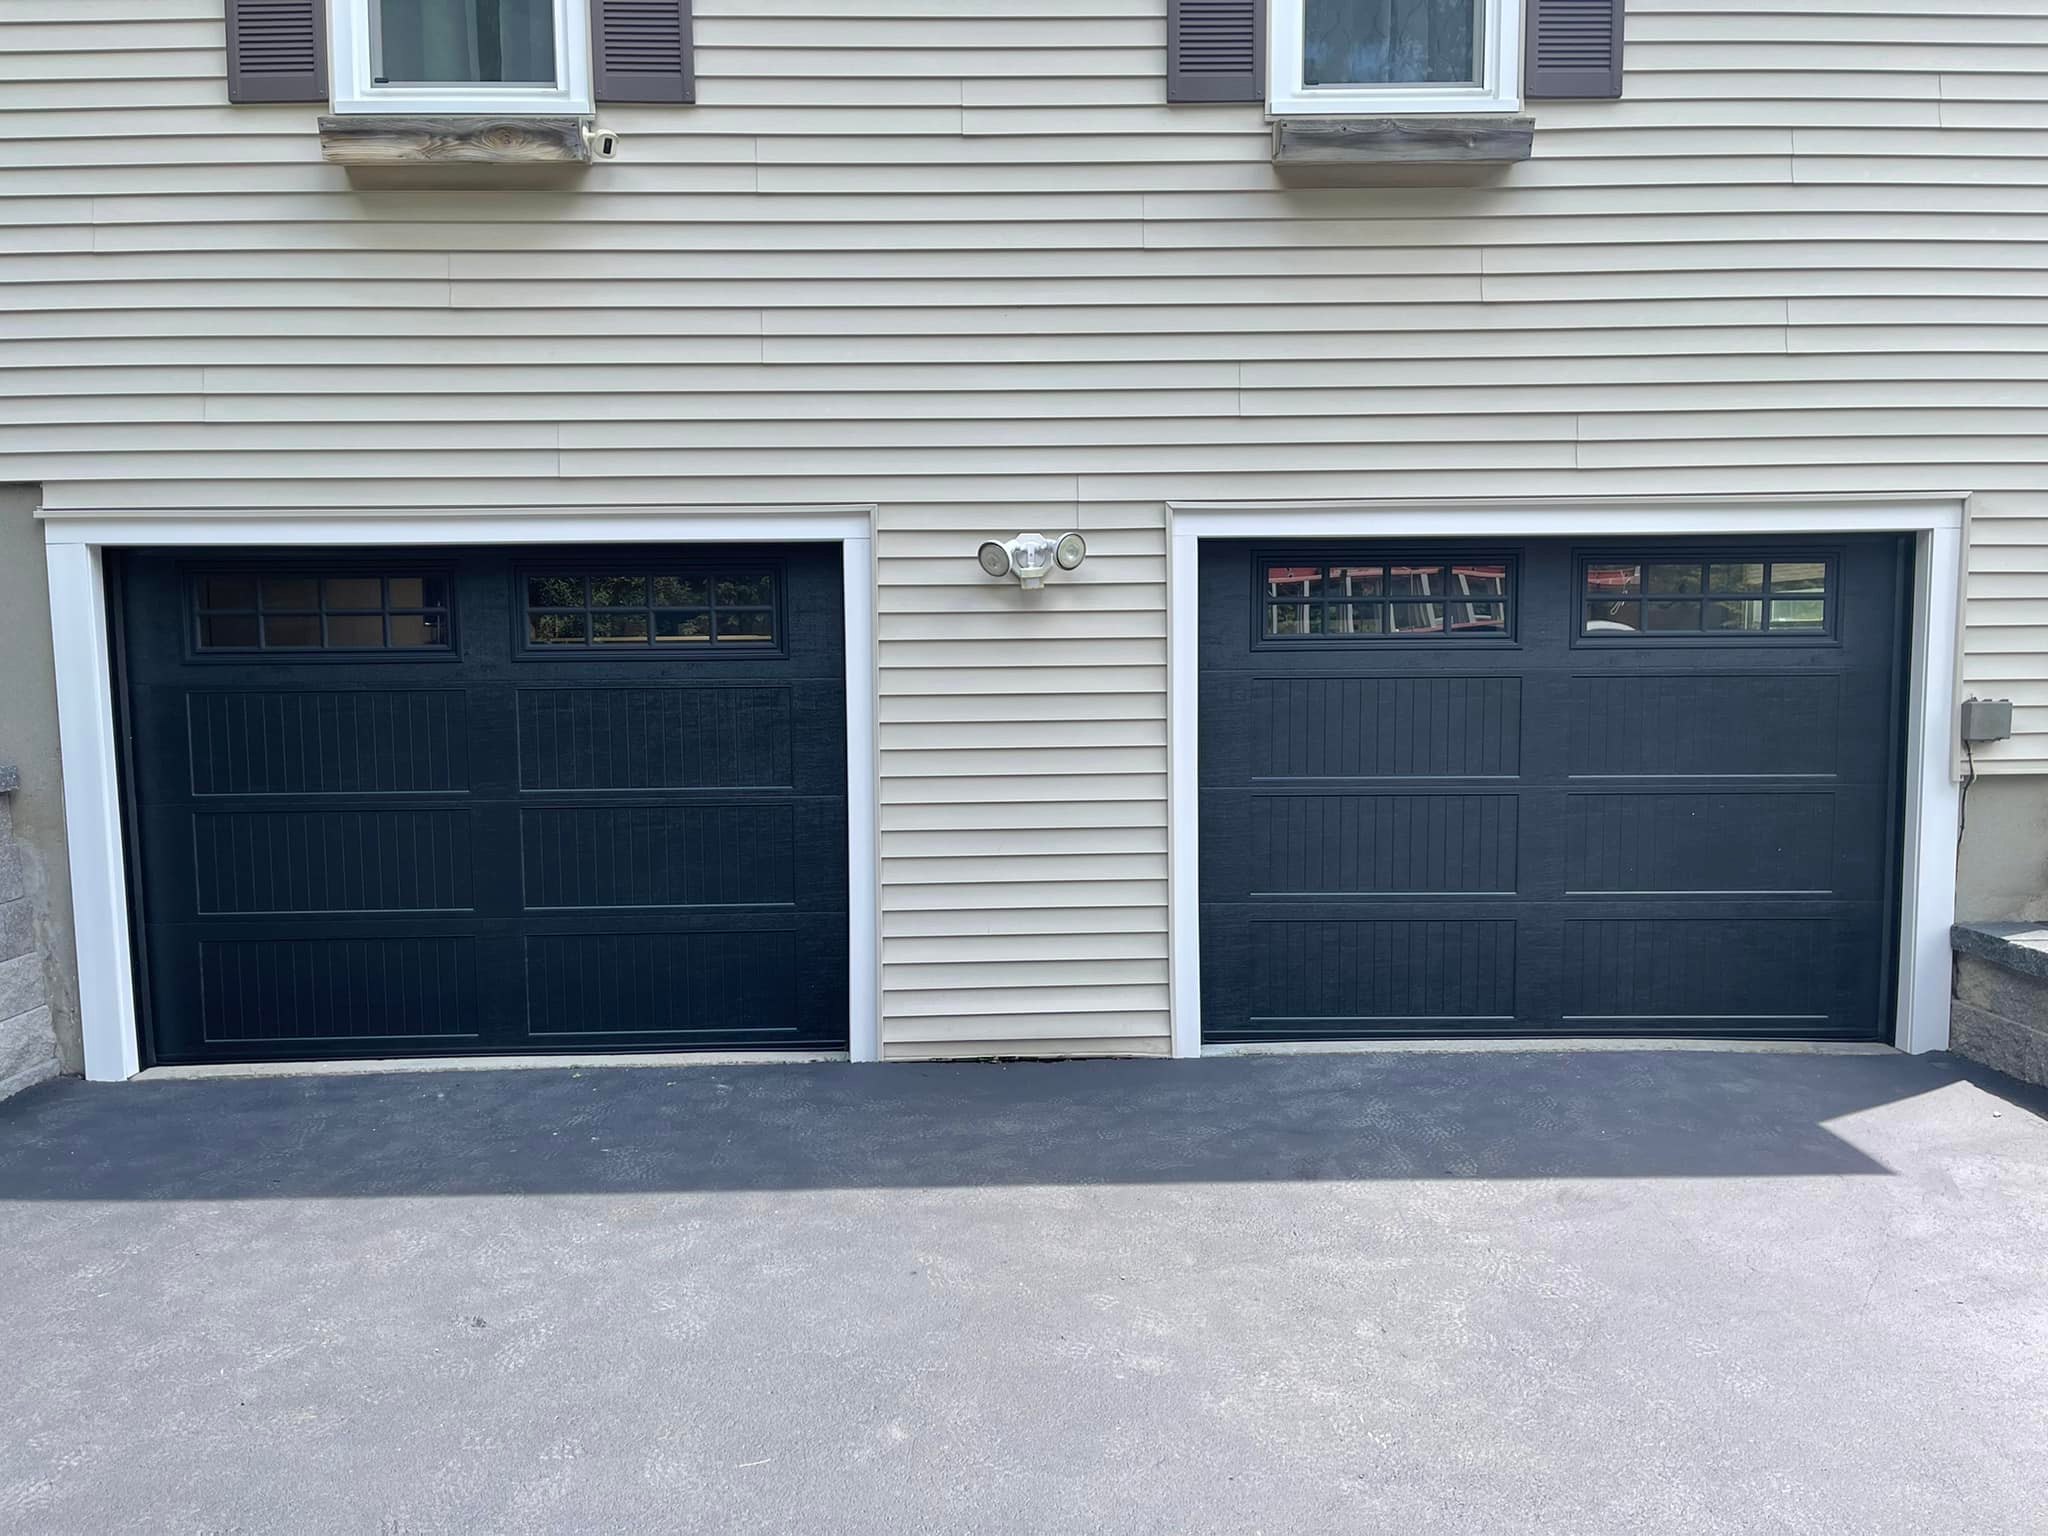 Tri-Valley Garage Door project 8 complete